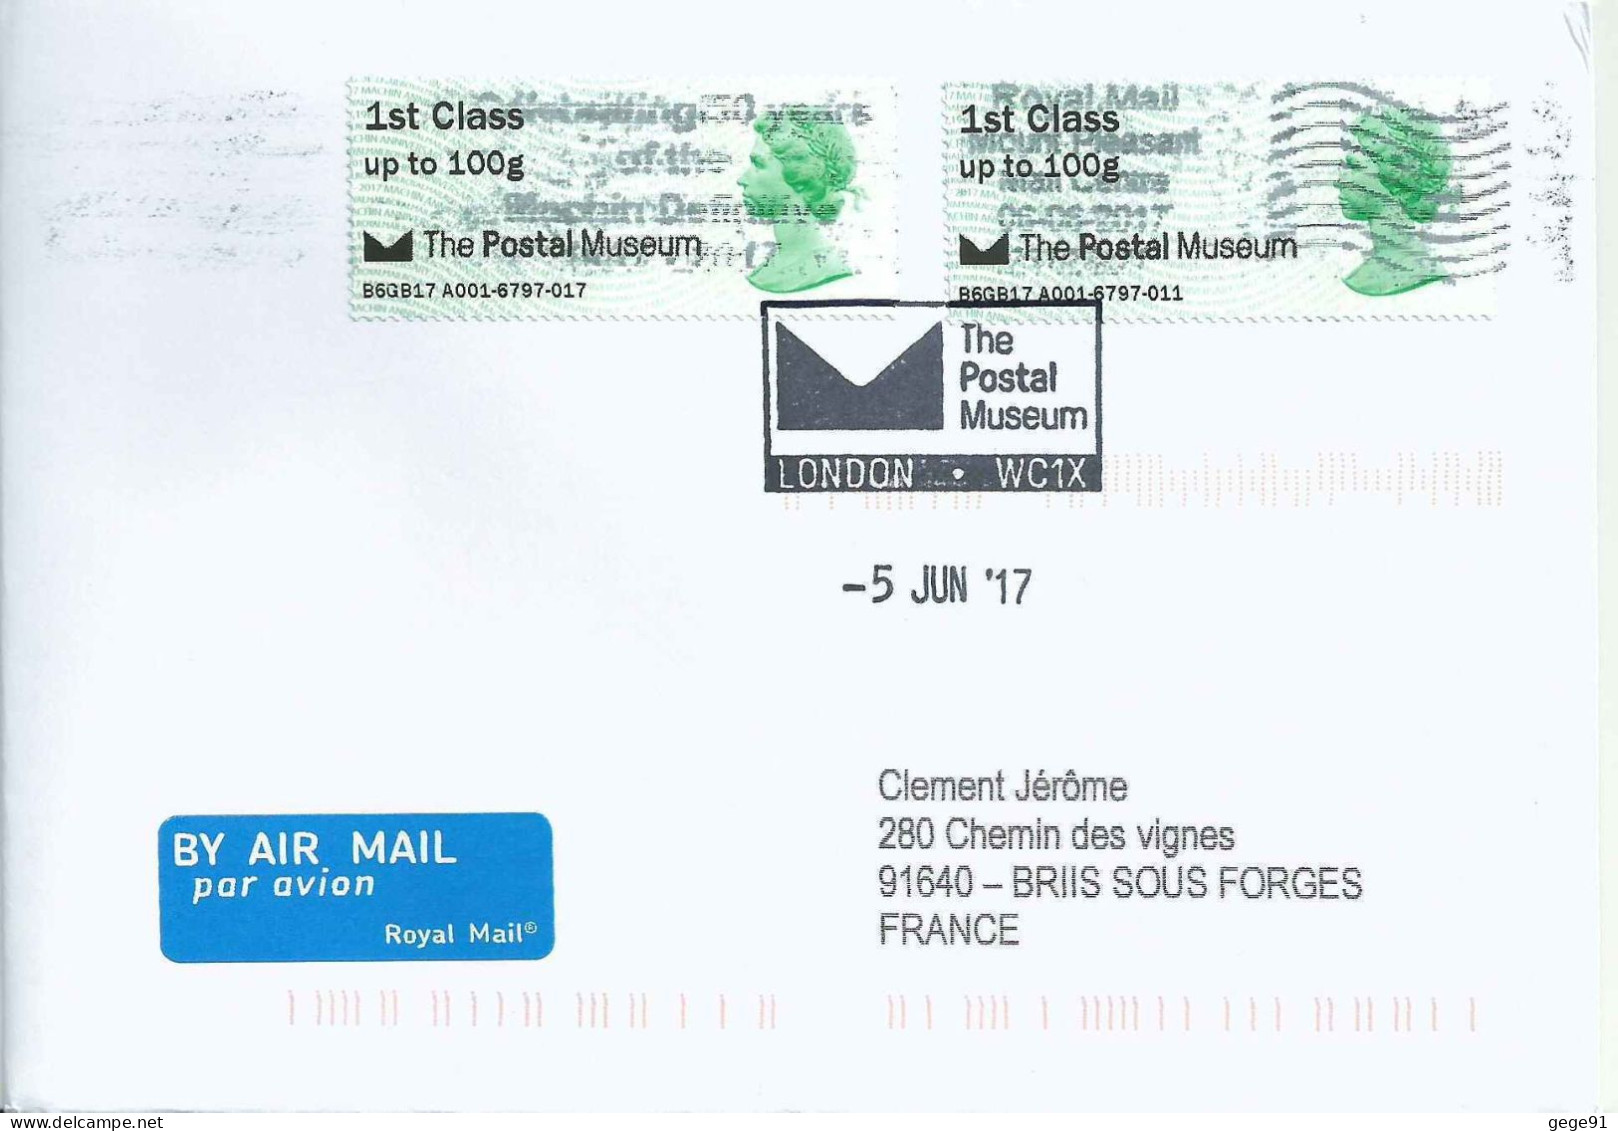 Vignette de distributeur - ATM - IAR - Machin - QEII - The Postal Museum - Série de 6 lettres